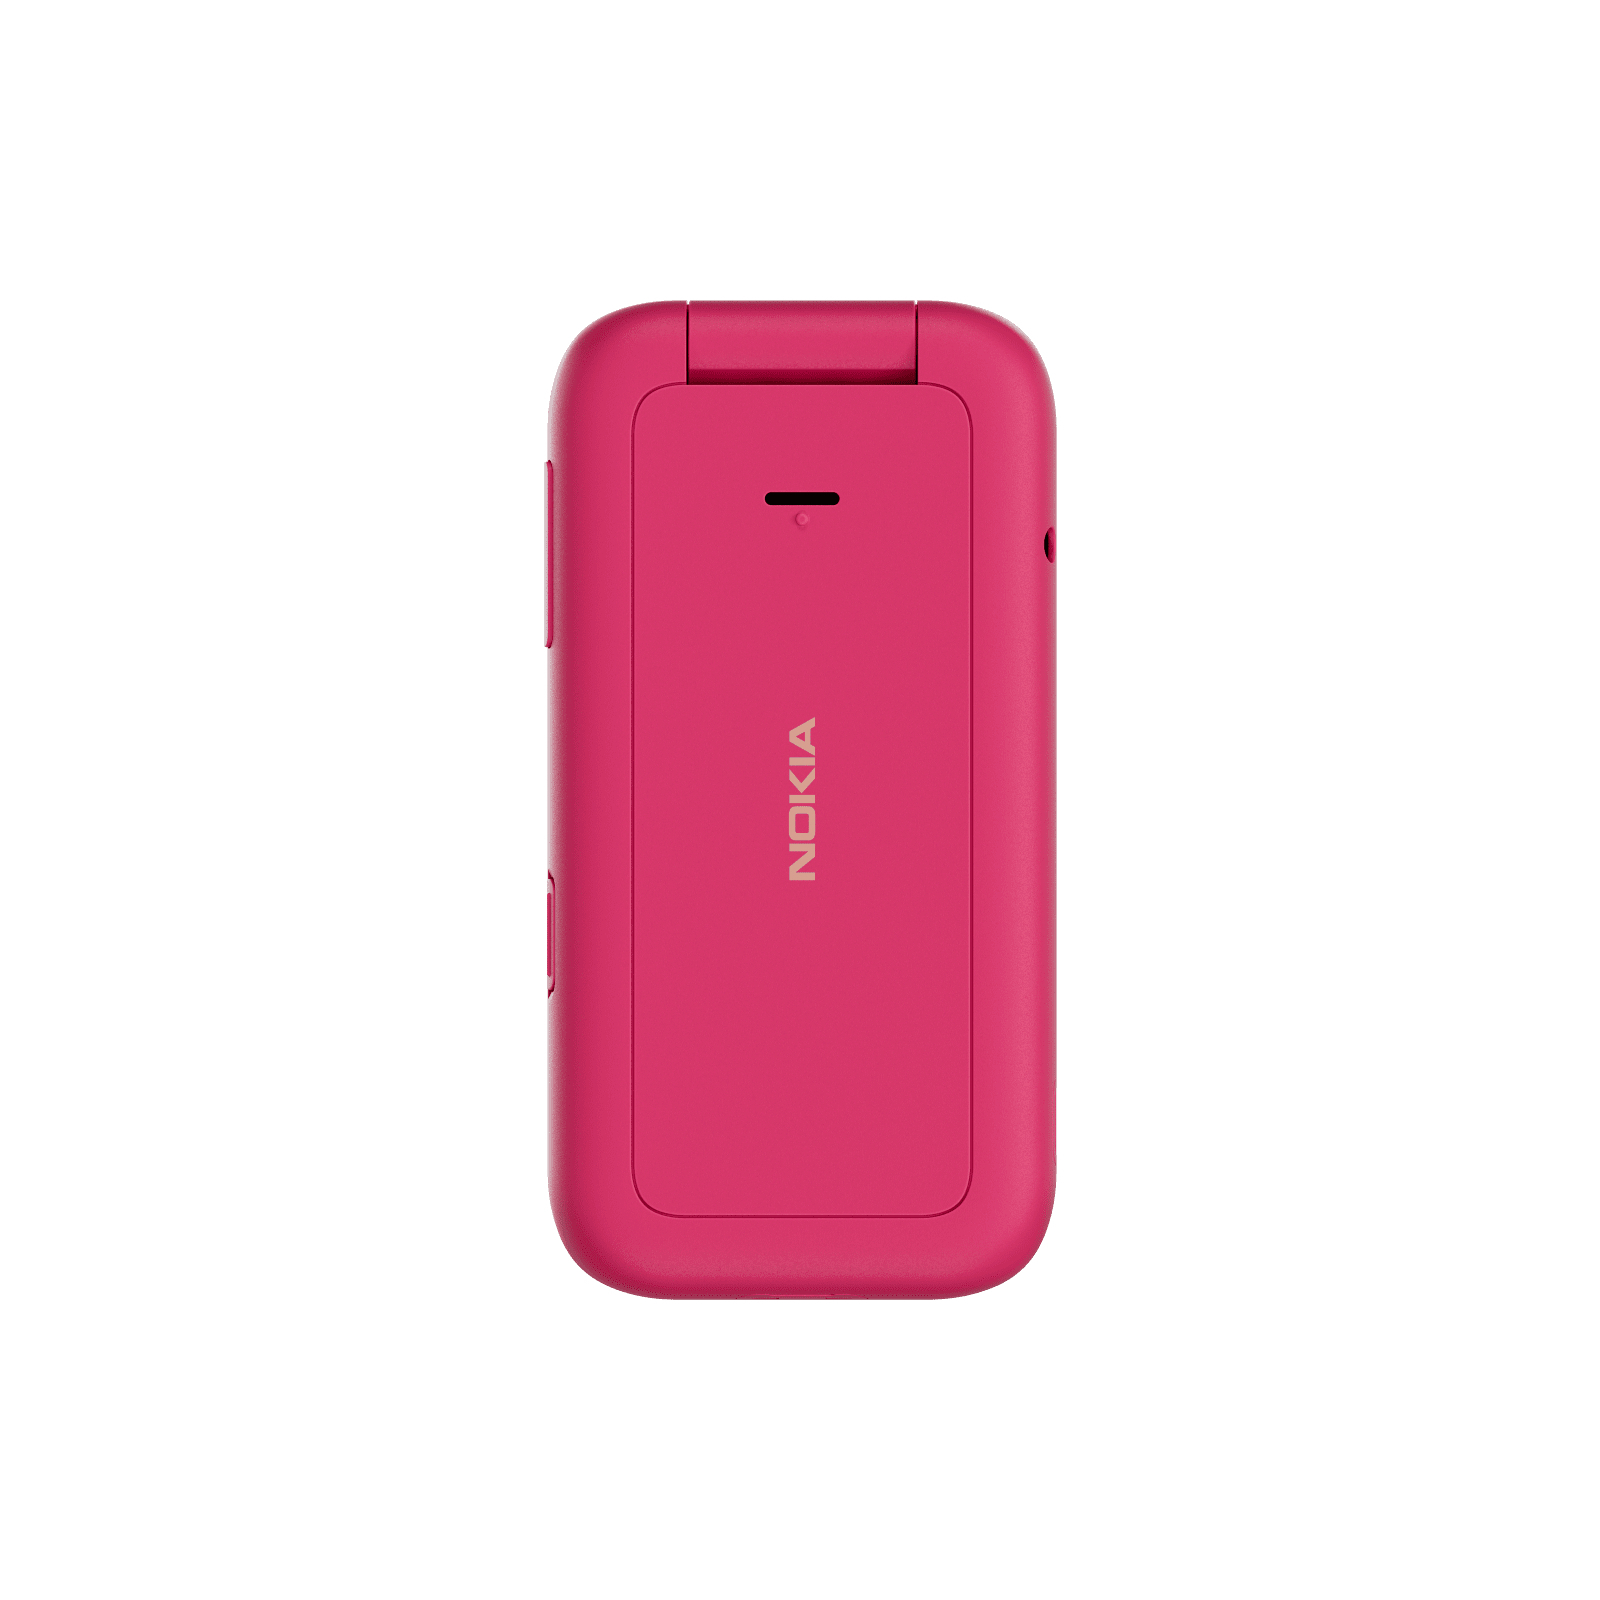 Мобильный телефон Nokia 2660 Flip Red изображение 3